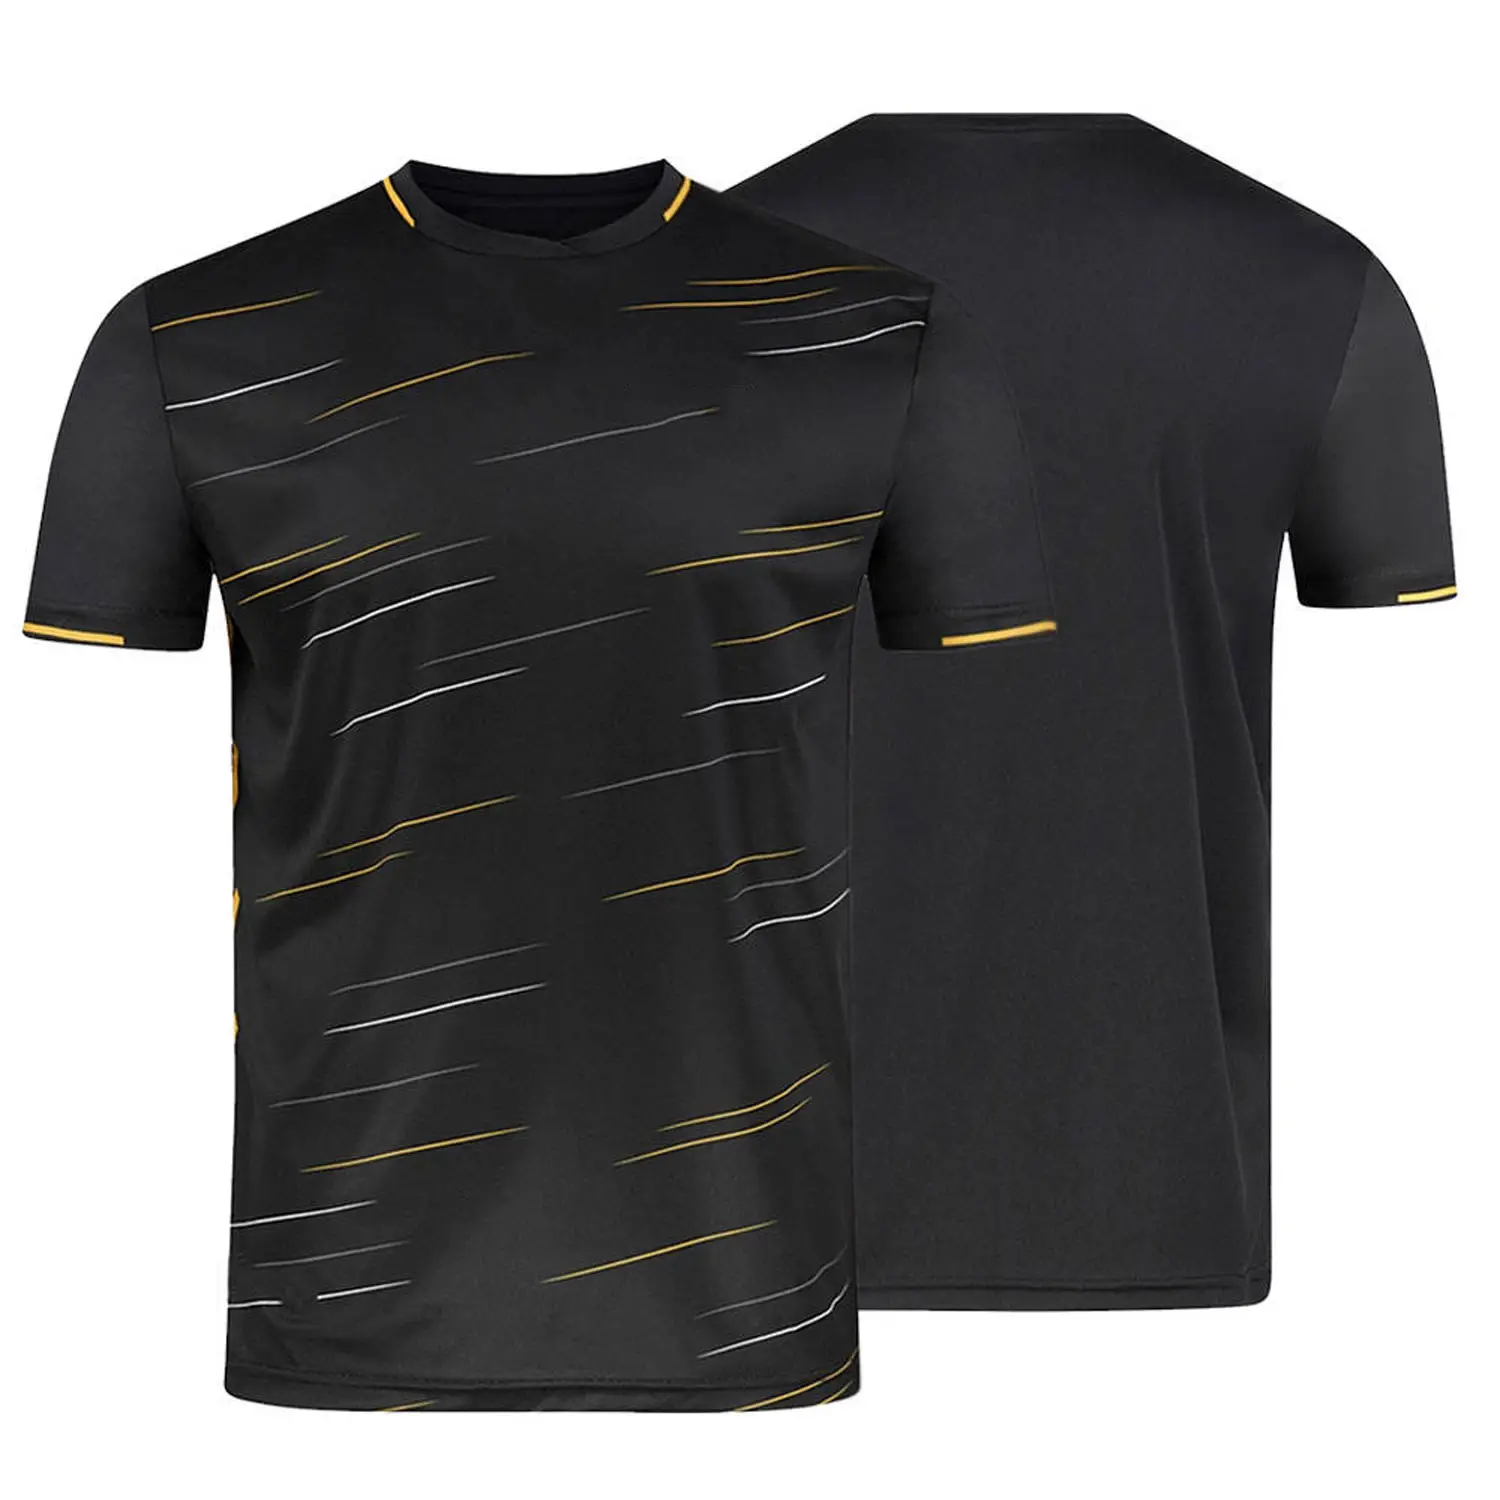 Camiseta universal unissex personalizada, seu próprio design personalizado, camiseta masculina estampada sublimada.